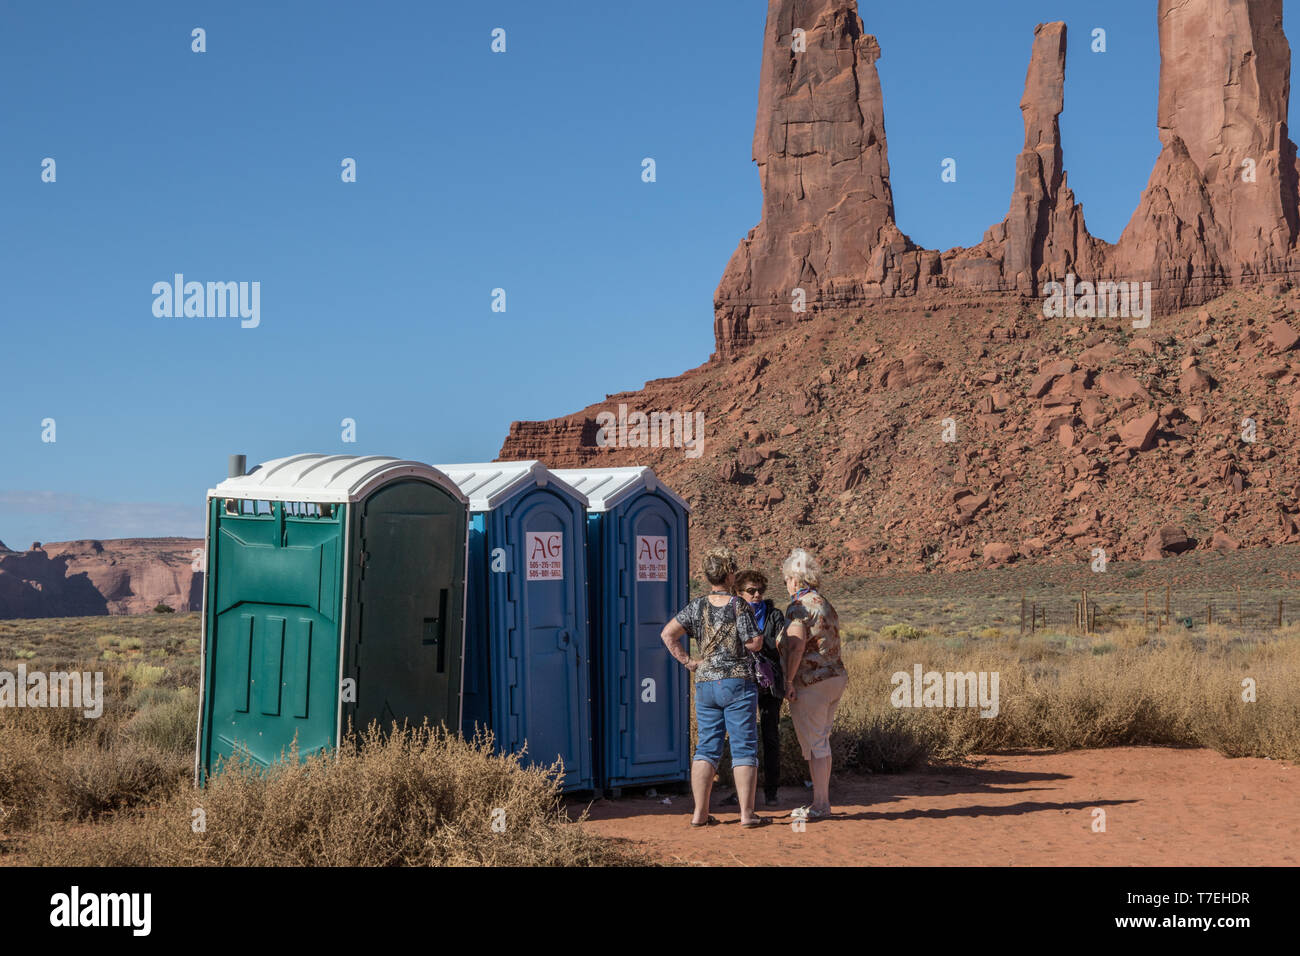 La Monument Valley, vicino a Kayenta, AZ, Stati Uniti d'America-10/2/15: tre donne stand parlano in attesa per l'accesso ai bagni portatili nella Monument Valley. Foto Stock